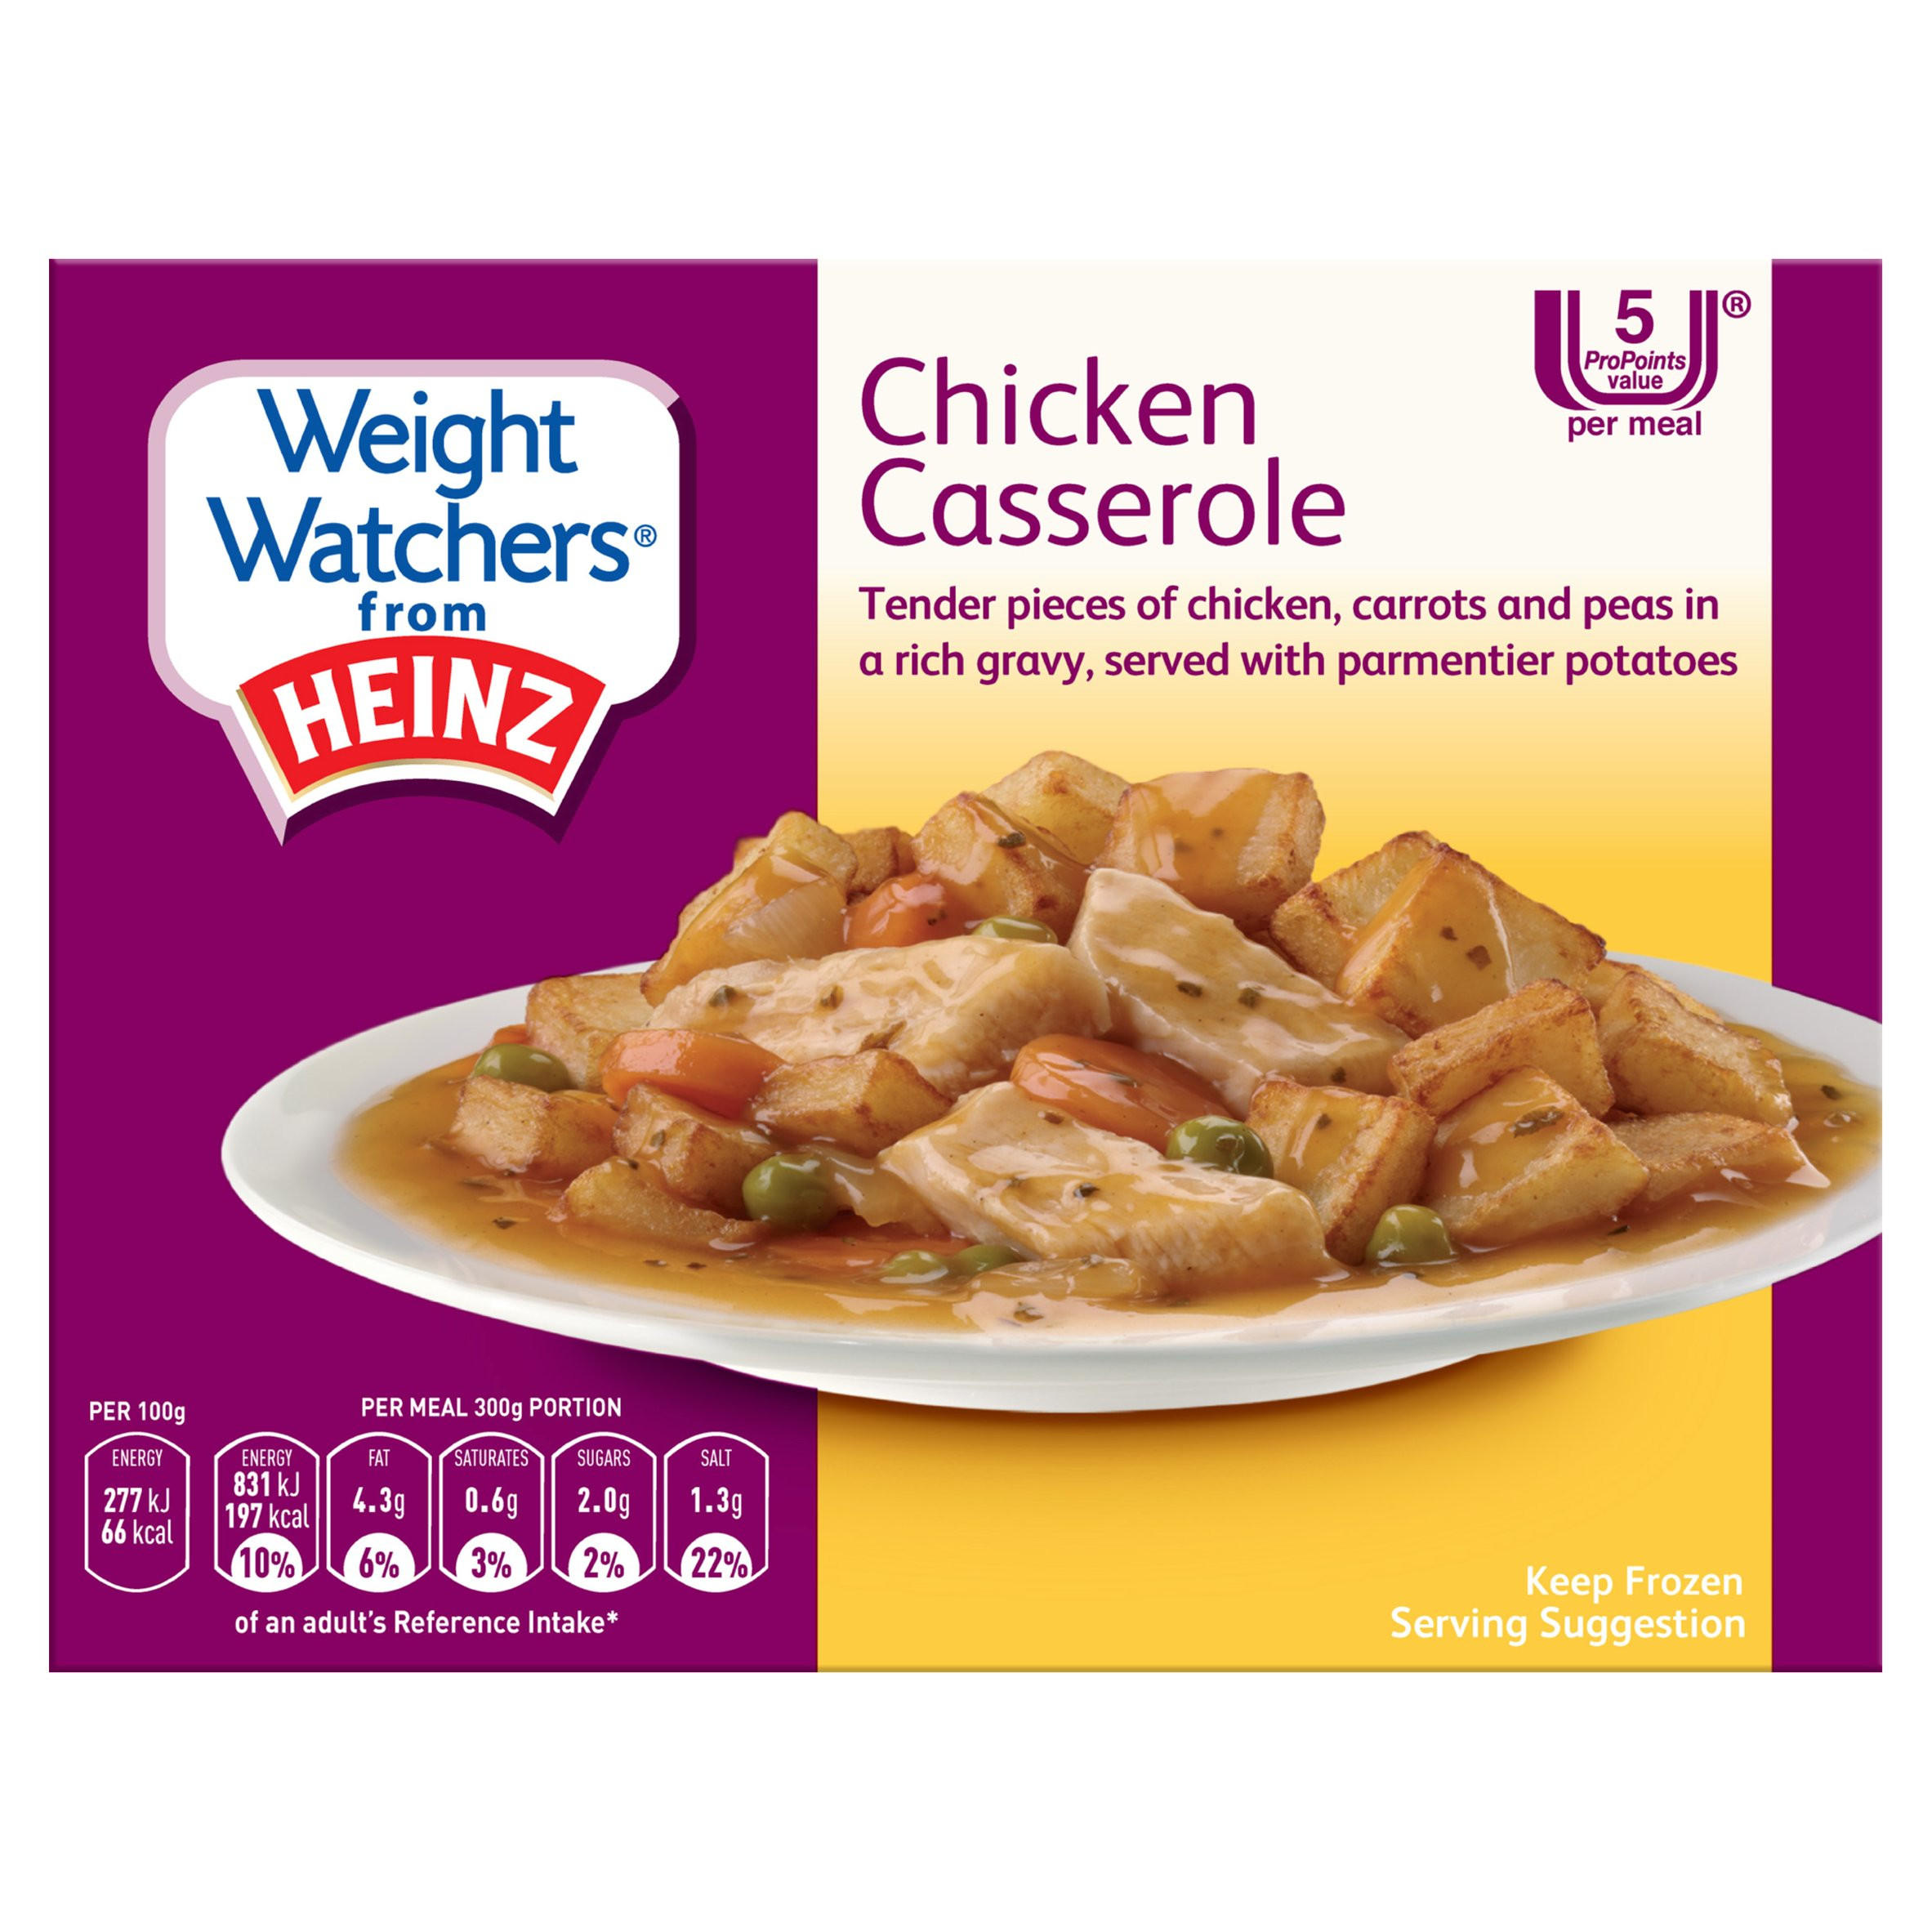 Weight Watchers from Heinz Chicken Casserole 300g | Weight Watchers ...